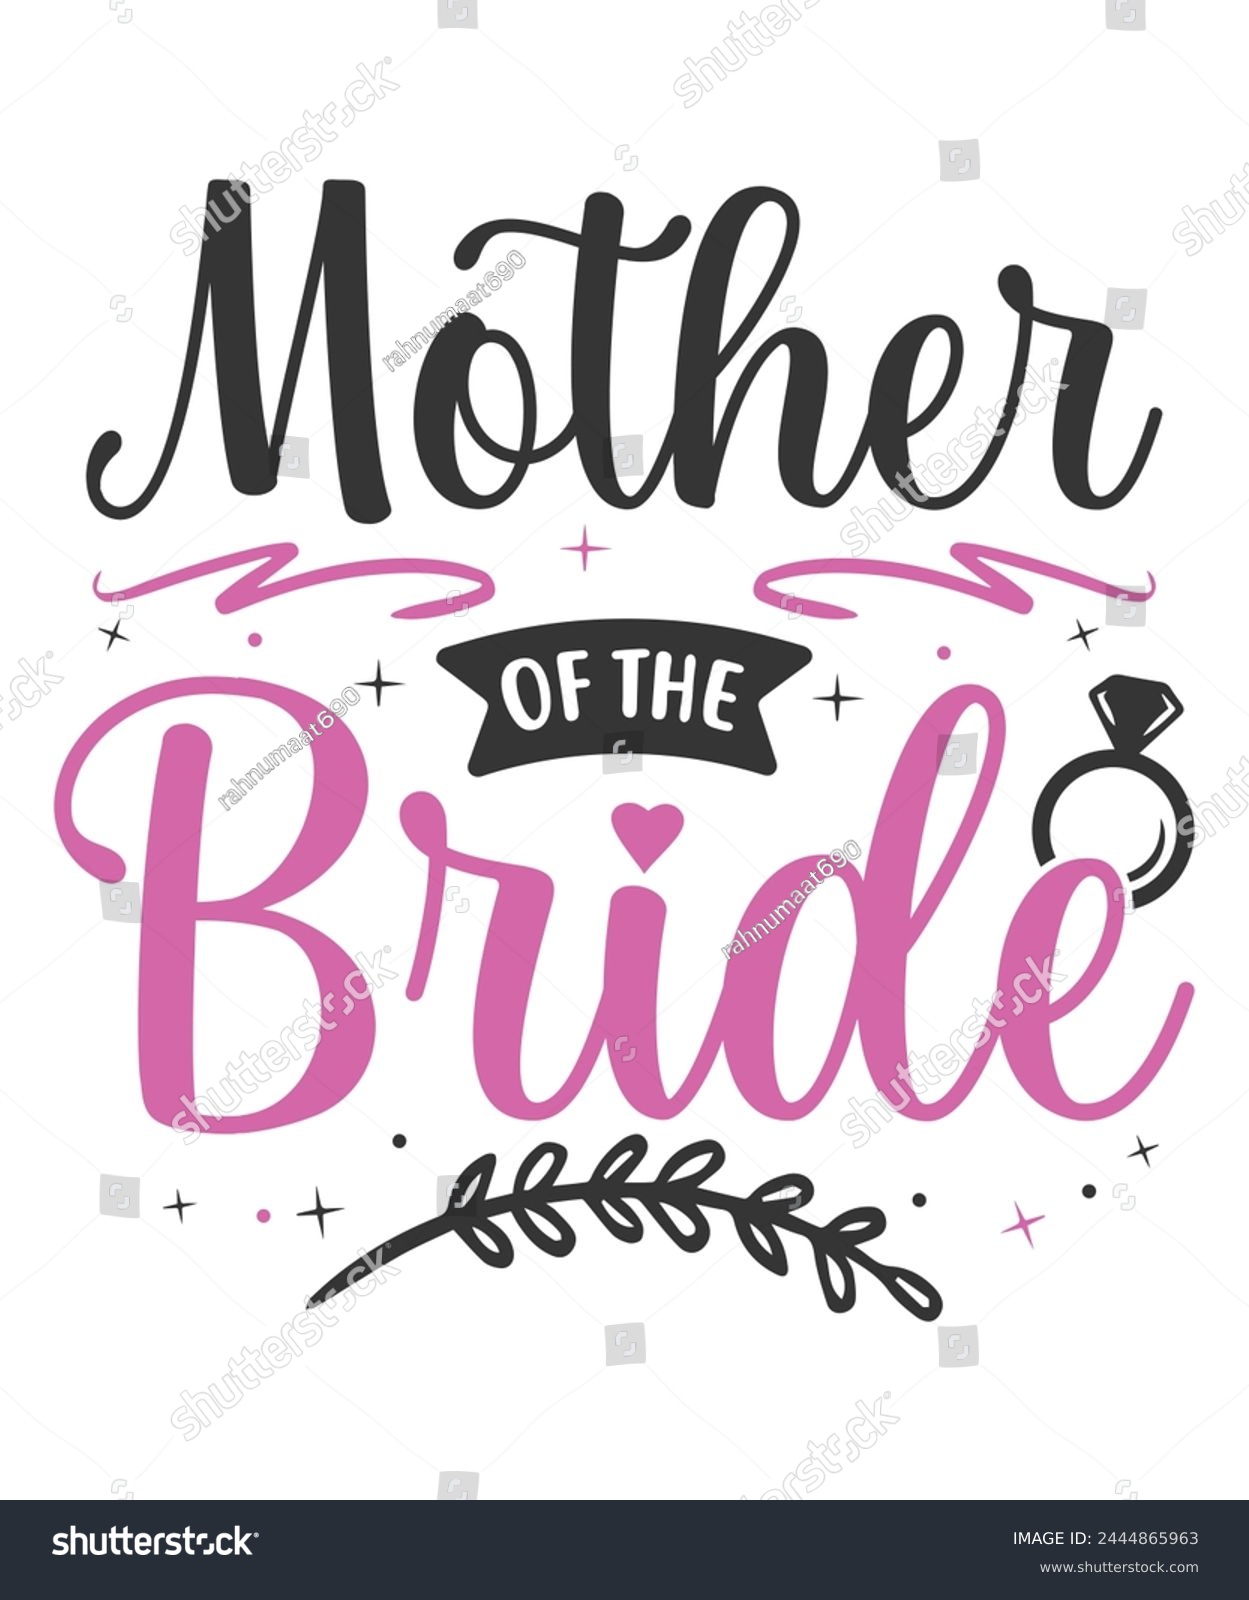 SVG of Mother of the bride wedding bride groom svg